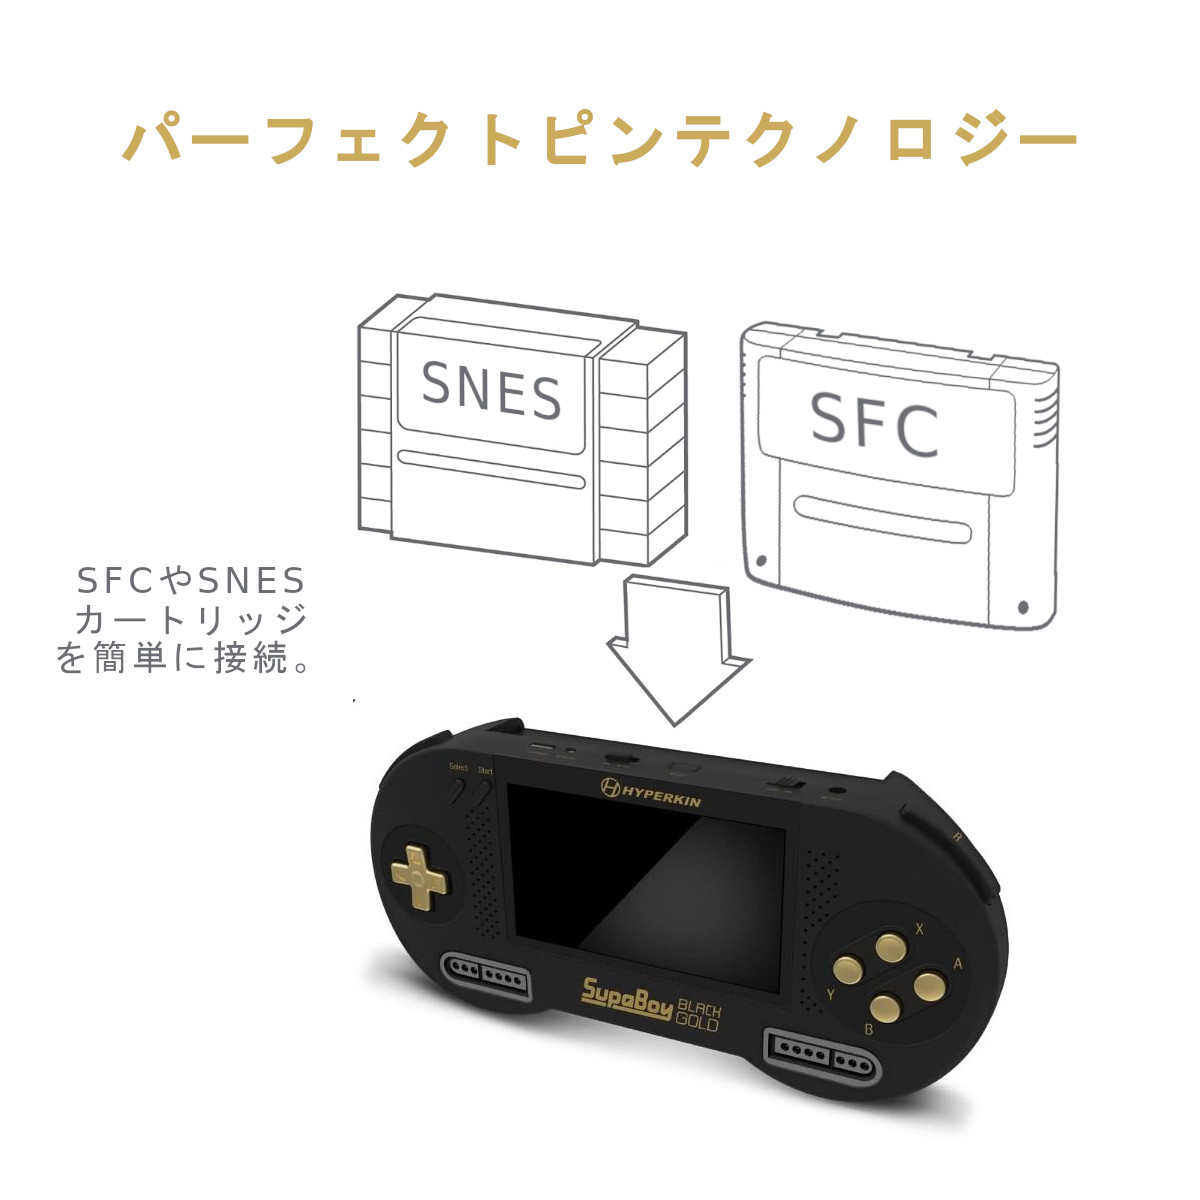 SFC SNES ポータブル互換機 Hyperkin スパボーイ ブラック・ゴールド 